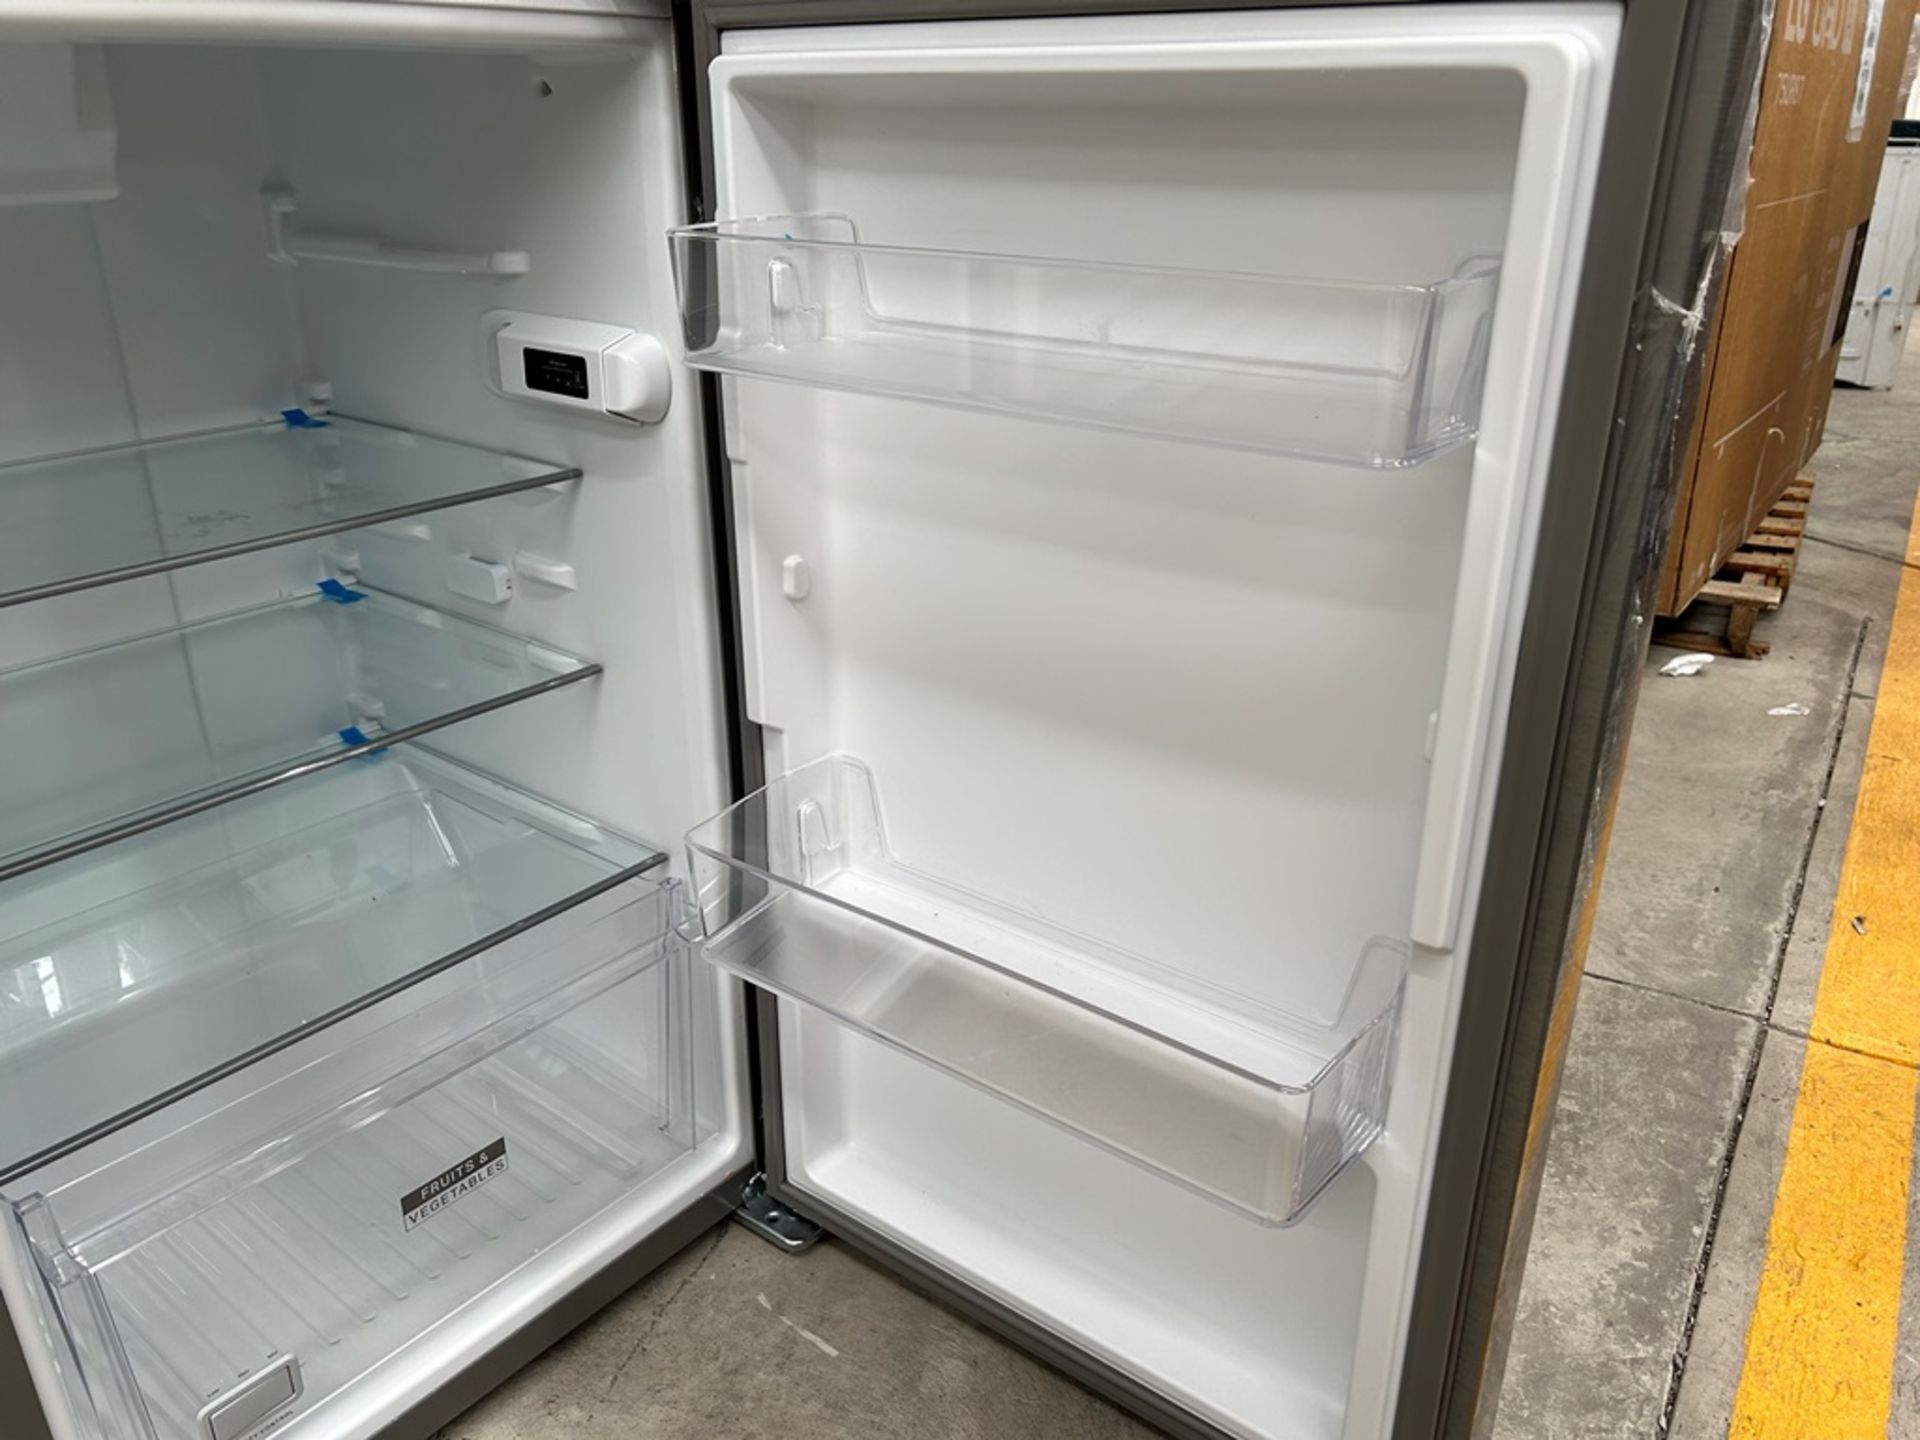 Lote de 2 refrigeradores contiene: 1 Refrigerador Marca WHIRPOOL, Modelo WT1230K, Serie 91306, Colo - Image 8 of 17